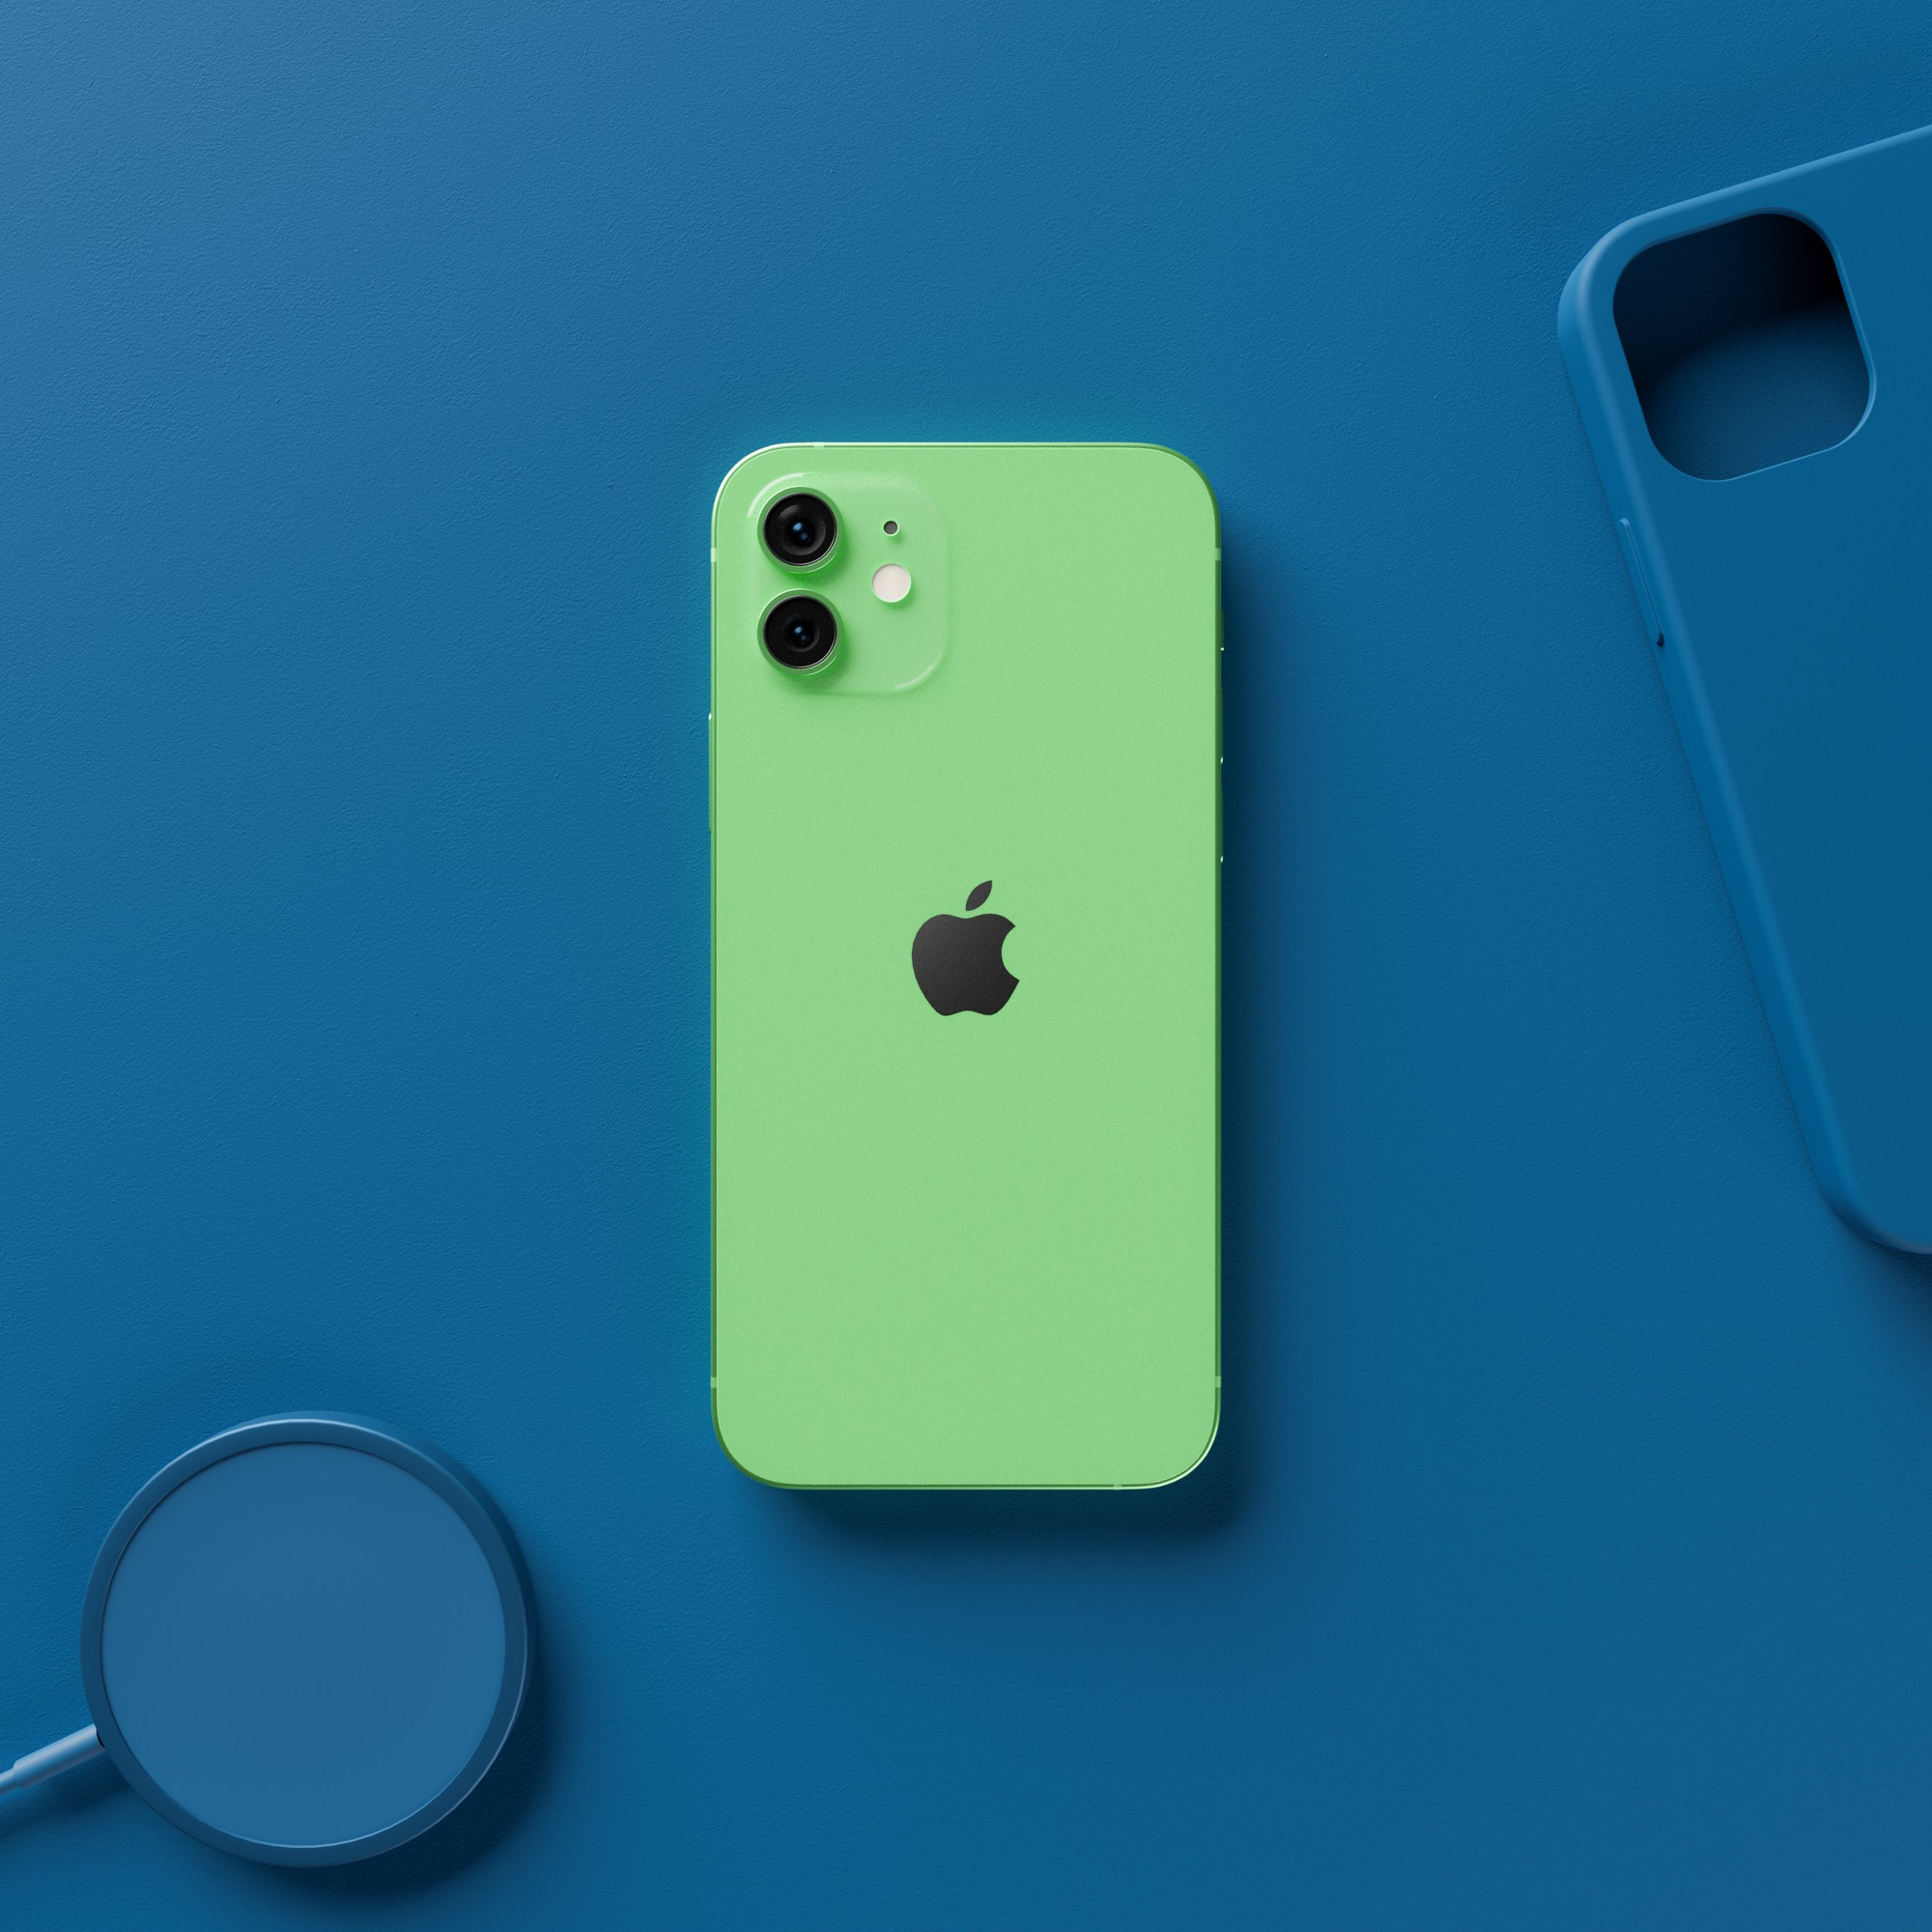 iPhone 13 màu sắc trên website: Bạn đang tìm đến một chiếc iPhone 13 với màu sắc độc đáo, nhưng lại lăn tăn không biết chọn màu nào cho đúng ý mình? Tại sao bạn không ghé website của chúng tôi để tham khảo các hình ảnh về các màu sắc của iPhone 13? Đảm bảo sẽ giúp bạn dễ dàng hơn trong việc chọn mua sản phẩm.